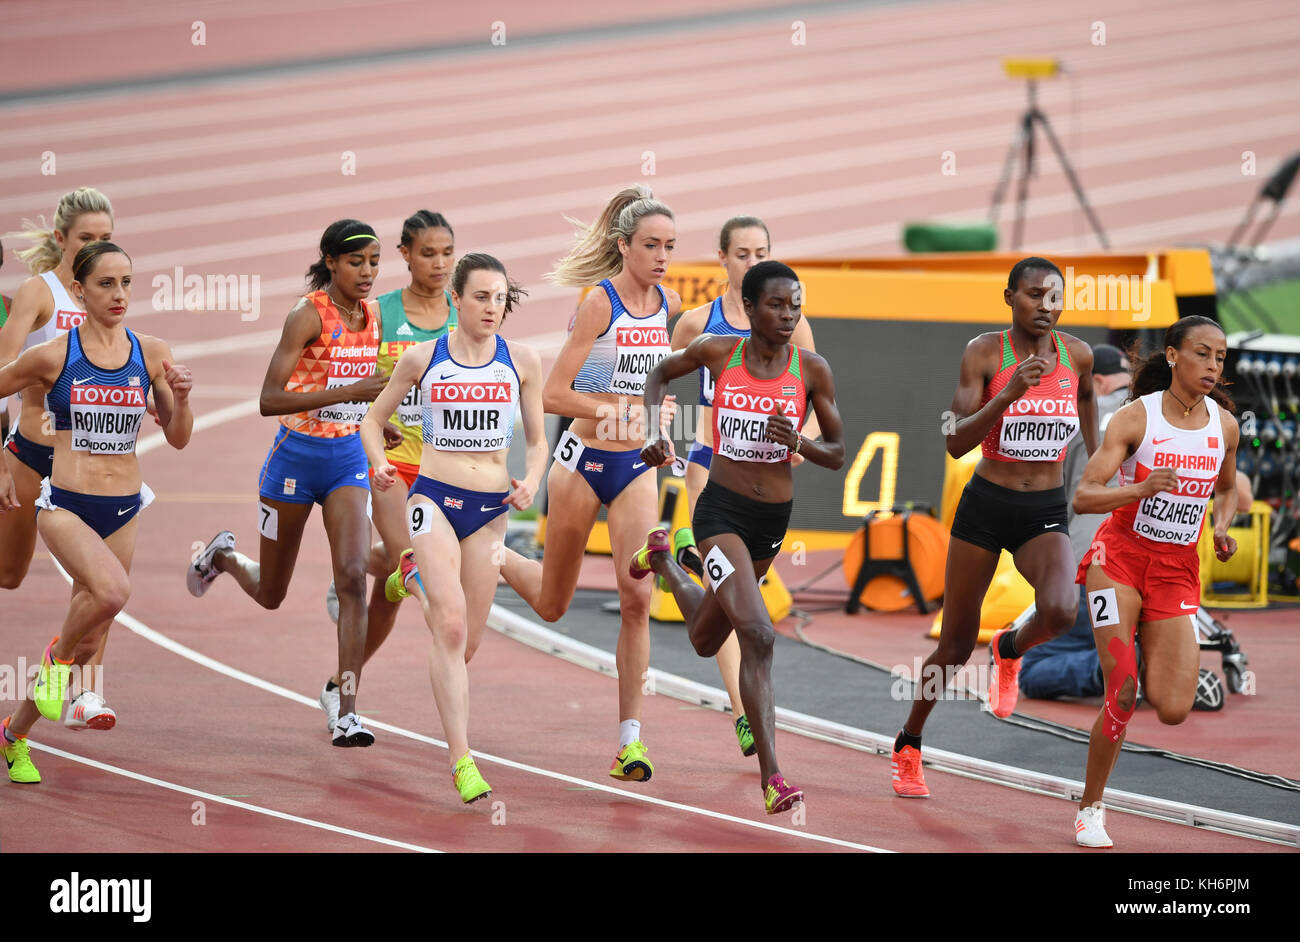 5000m femmes - Finale Championnats du monde IAAF - London 2017 Banque D'Images